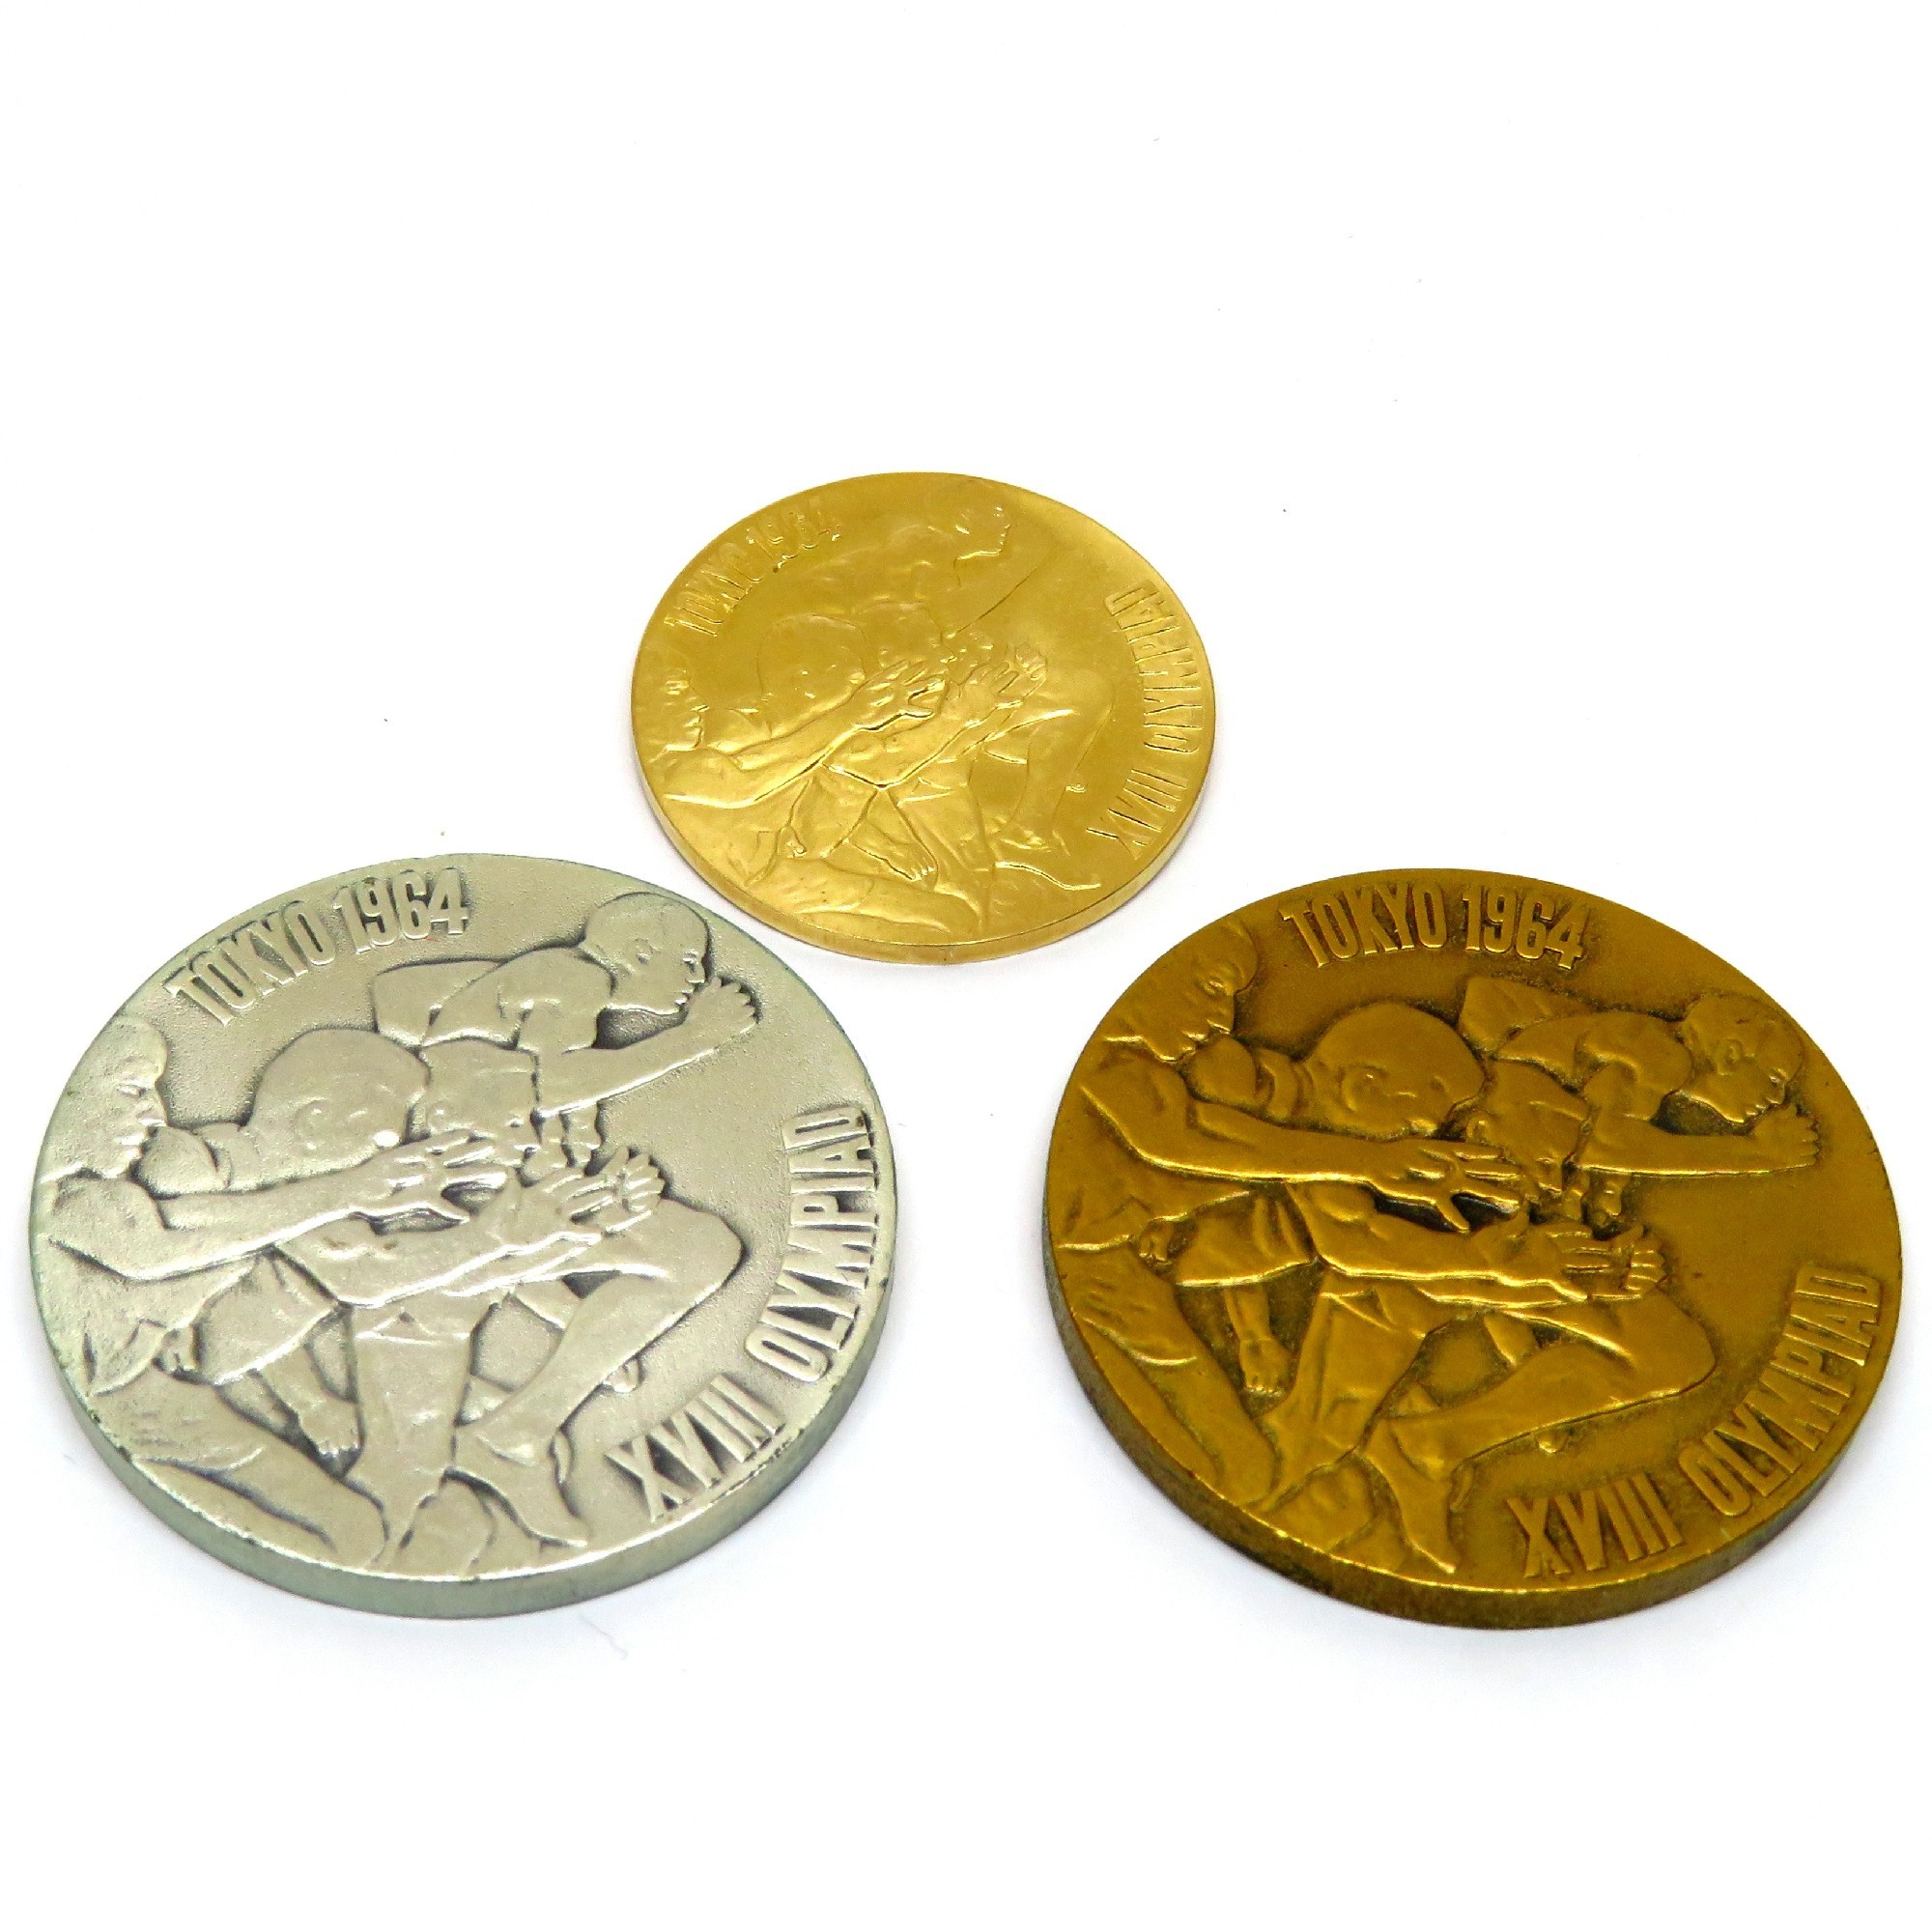 1964 東京 オリンピック 記念コイン 記念メダル - 旧貨幣/金貨/銀貨 